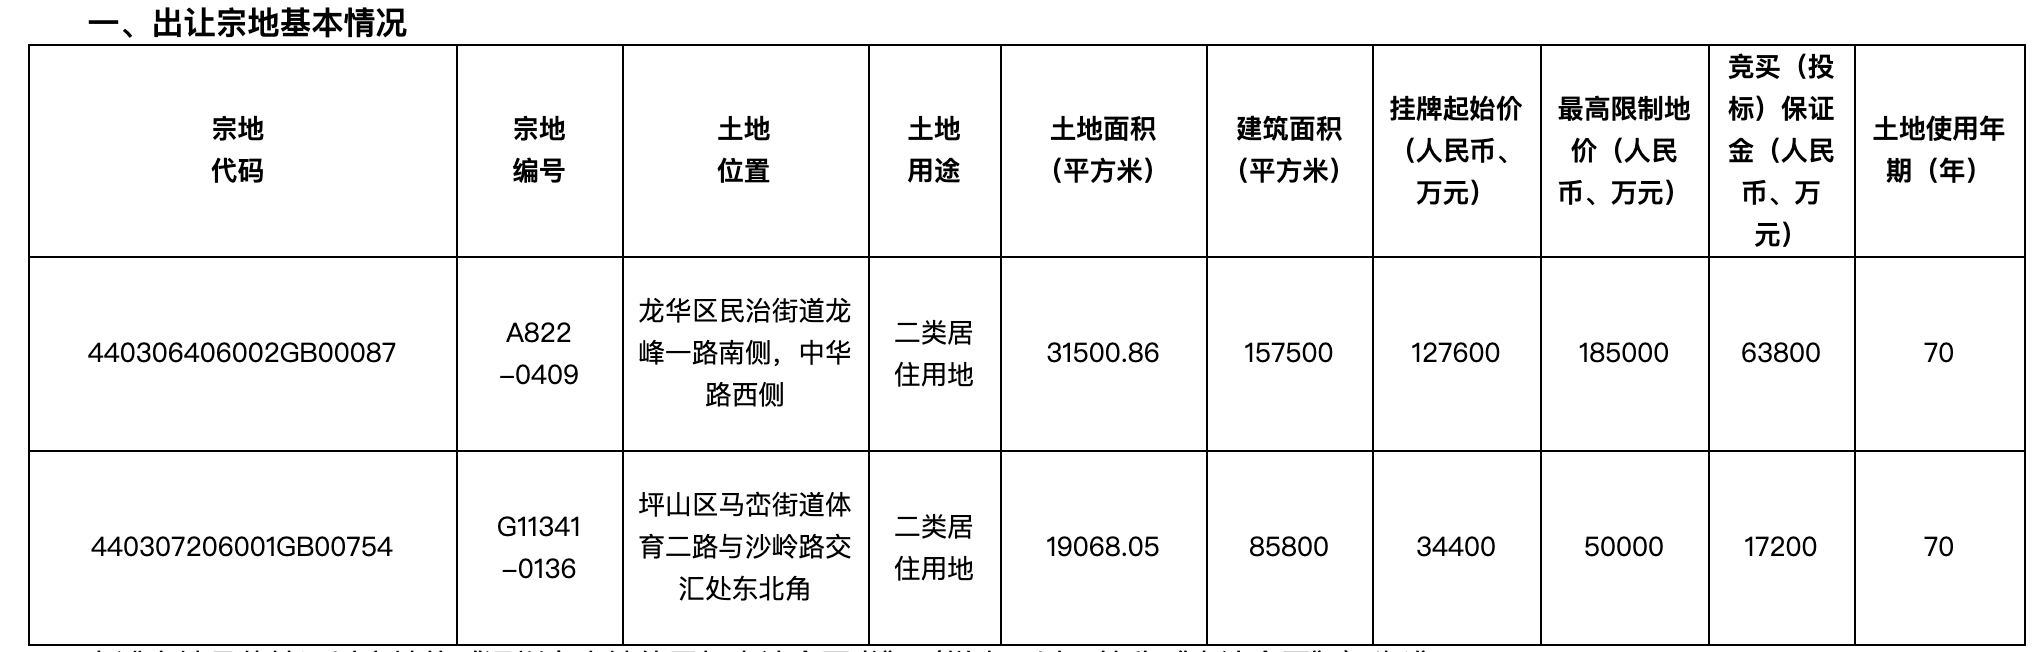 预告|6月18日深圳4宗宅地集中出让 出让起始总价达37.81亿元